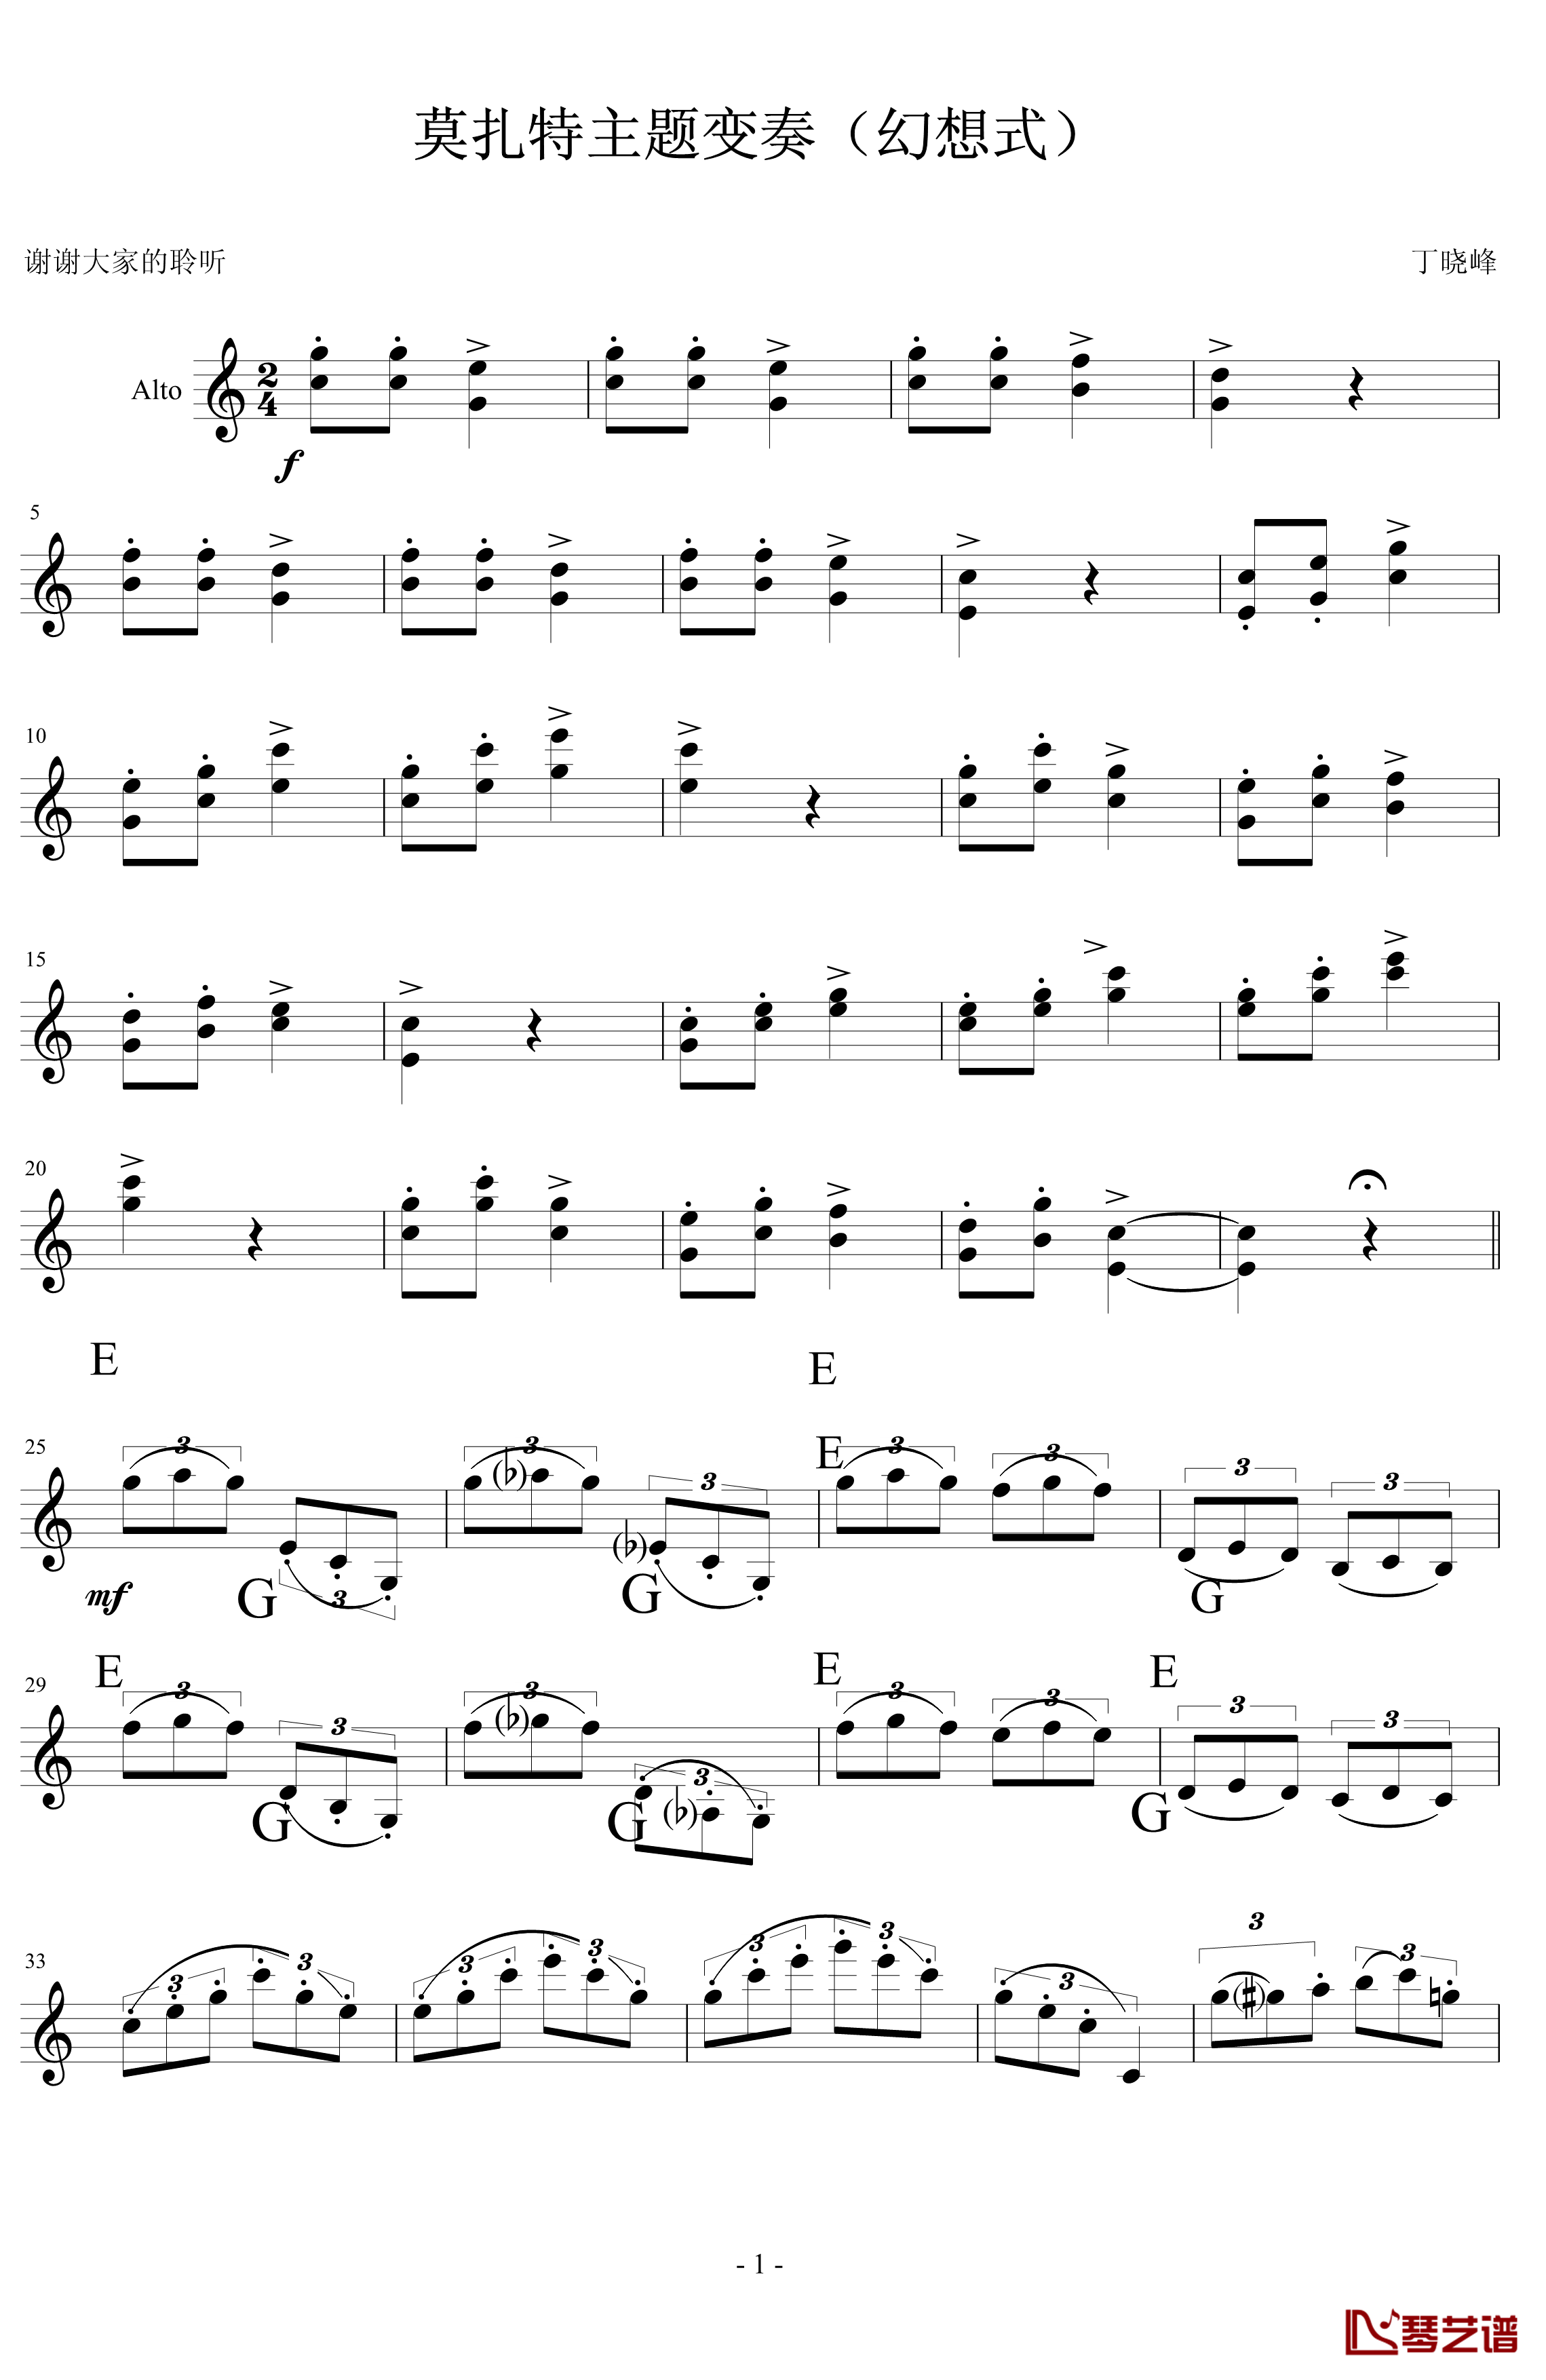 莫扎特主题变奏曲钢琴谱-DXF1